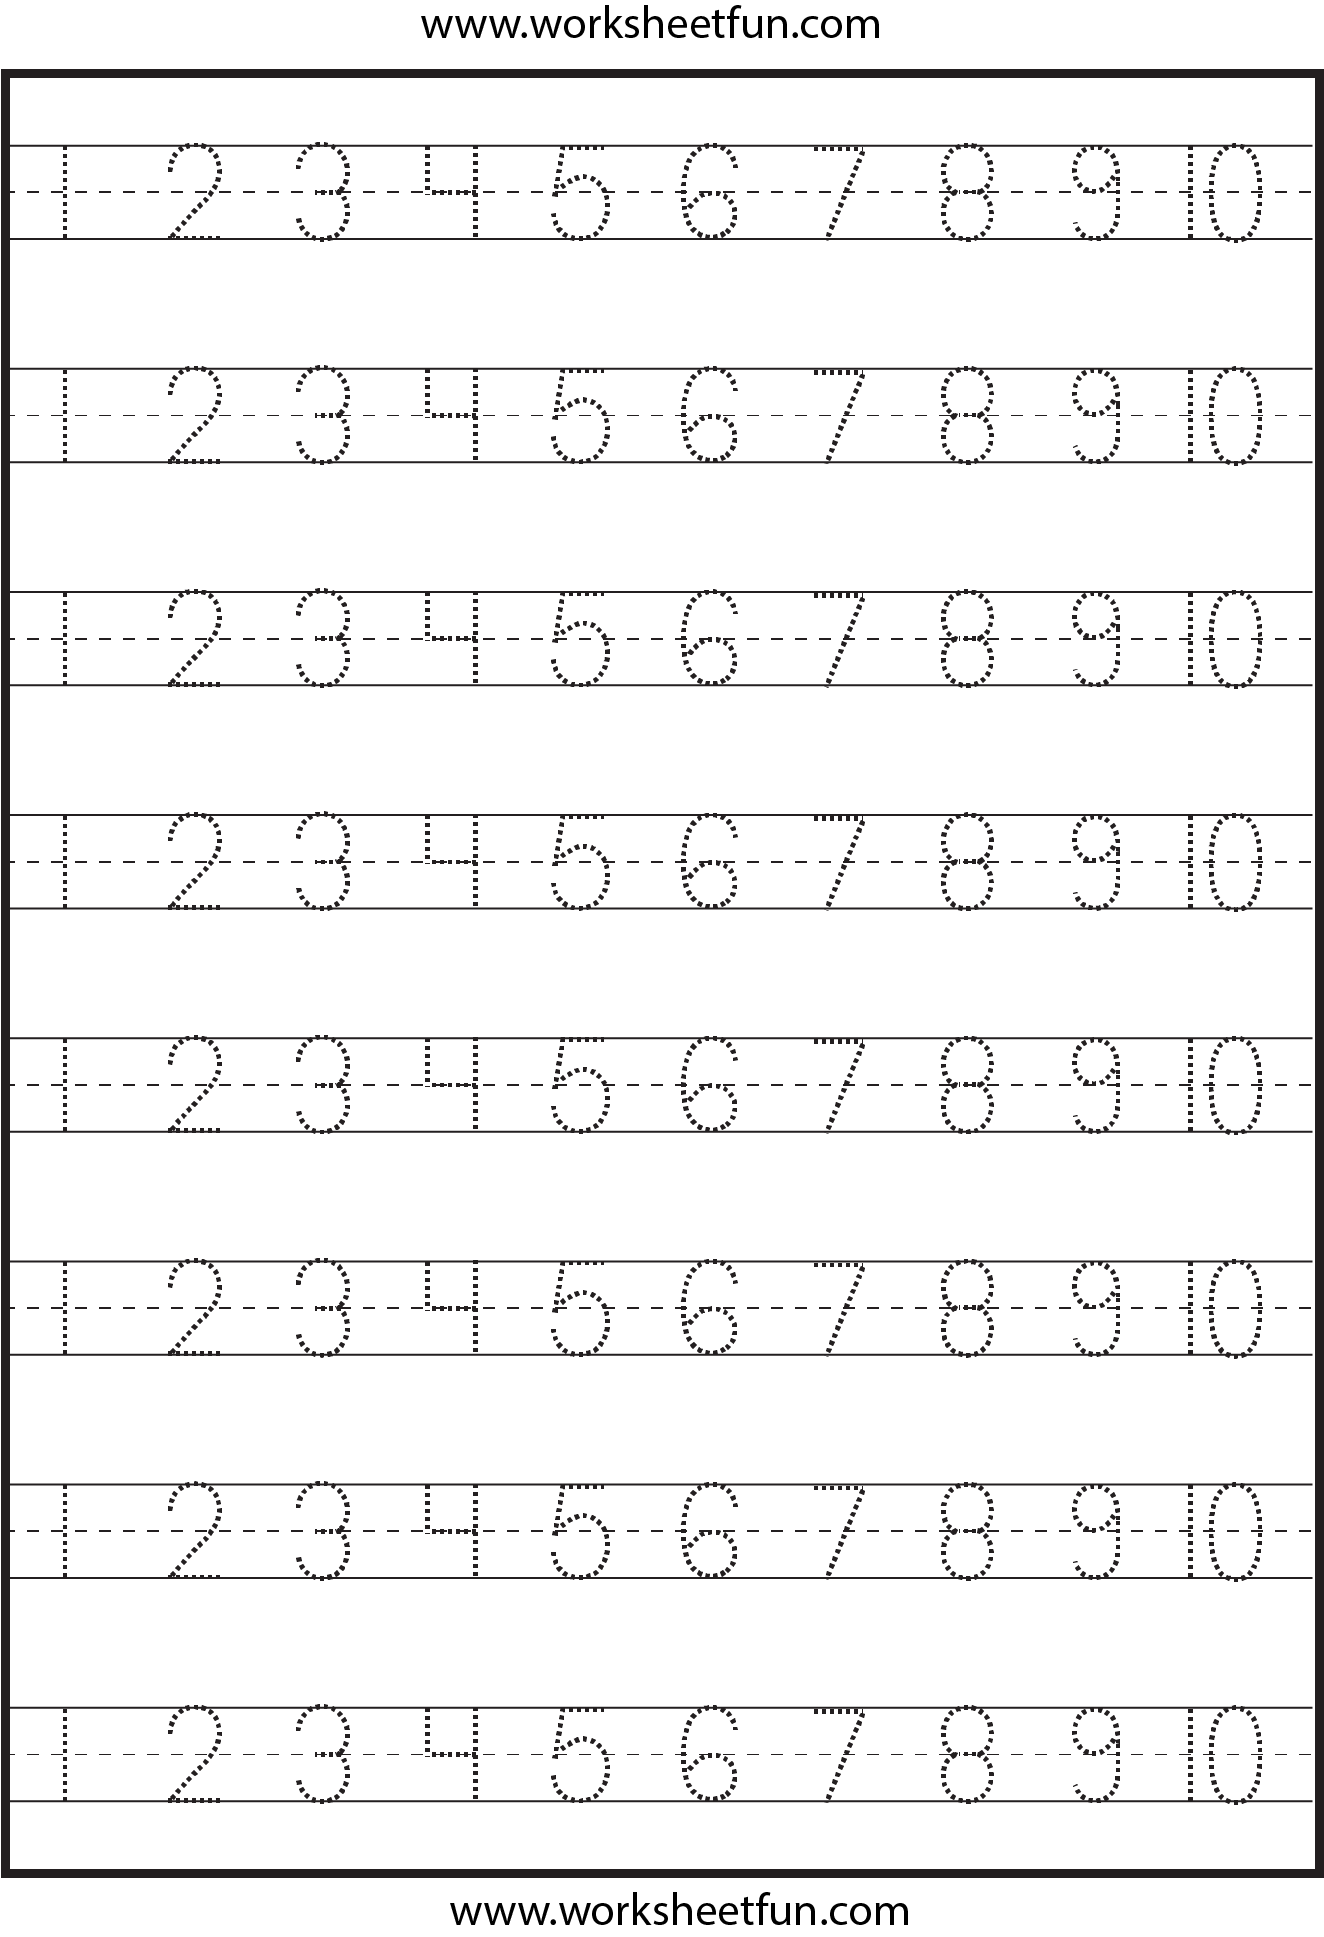 number tracing practice 1 20 tracing worksheet preschool kindergarten ...